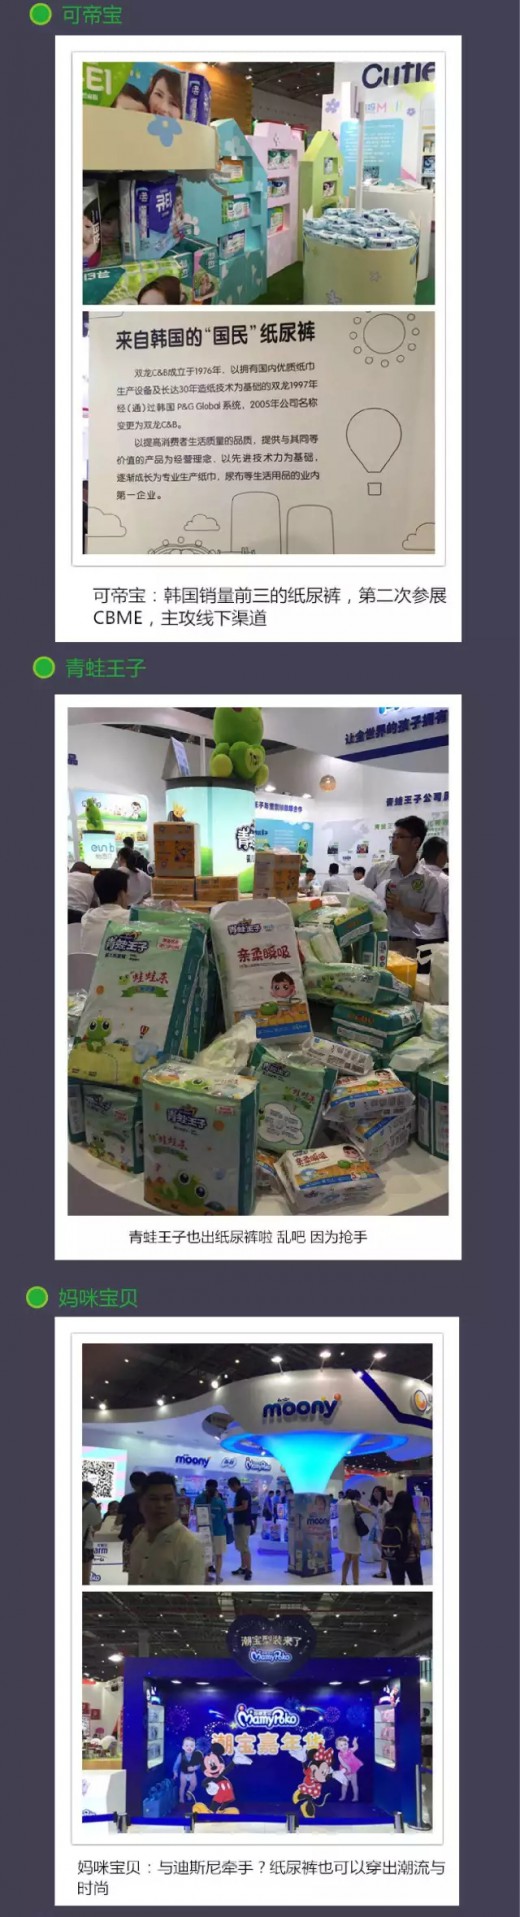 2016上海CBME孕婴童展大解析 纸尿裤展馆有什么亮点